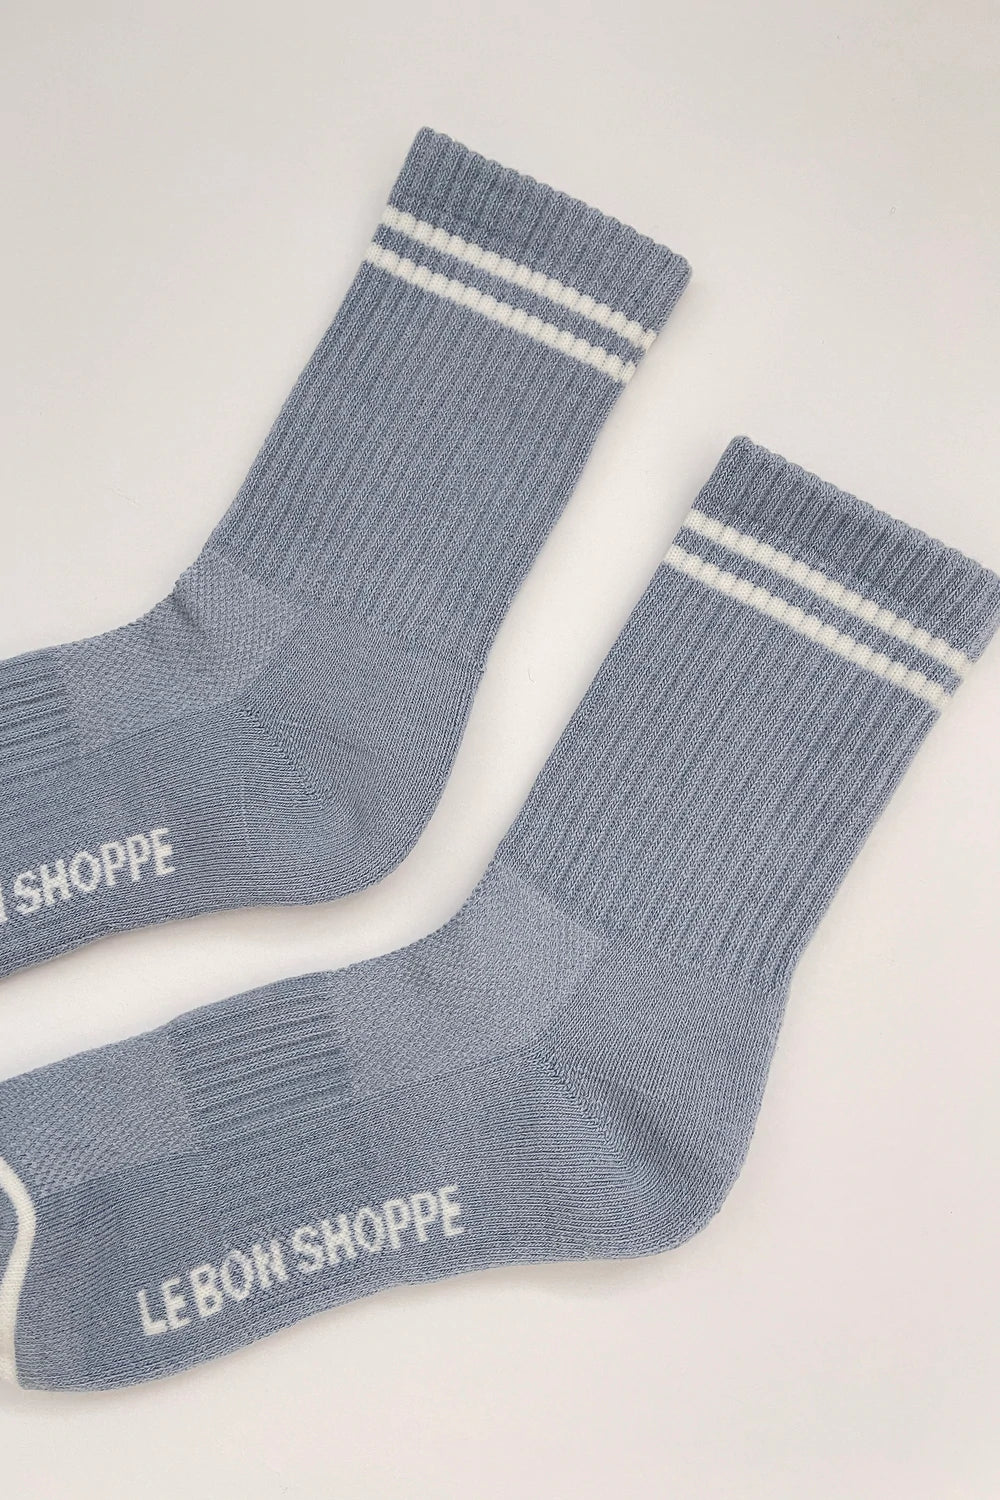 Le Bon Shoppe - Boyfriend Socks - Blue Grey